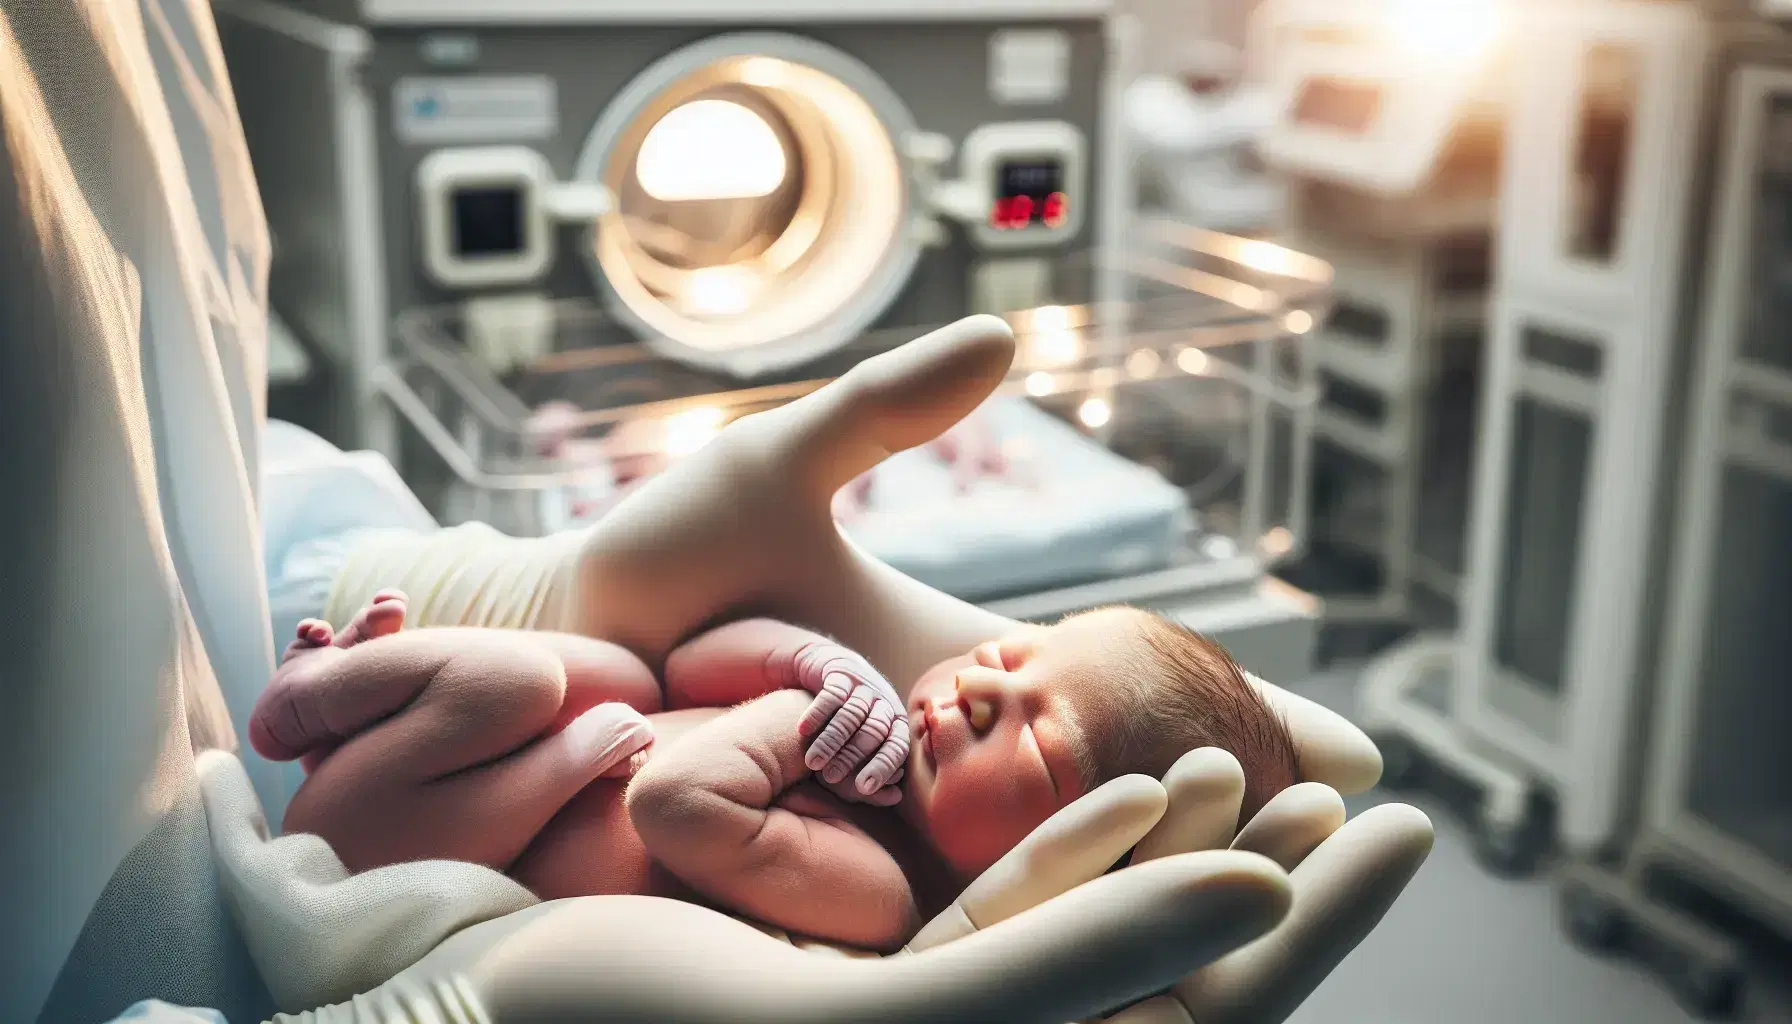 Manos enguantadas de profesional de la salud sosteniendo con cuidado a un recién nacido envuelto en manta blanca, con fondo desenfocado de incubadora.